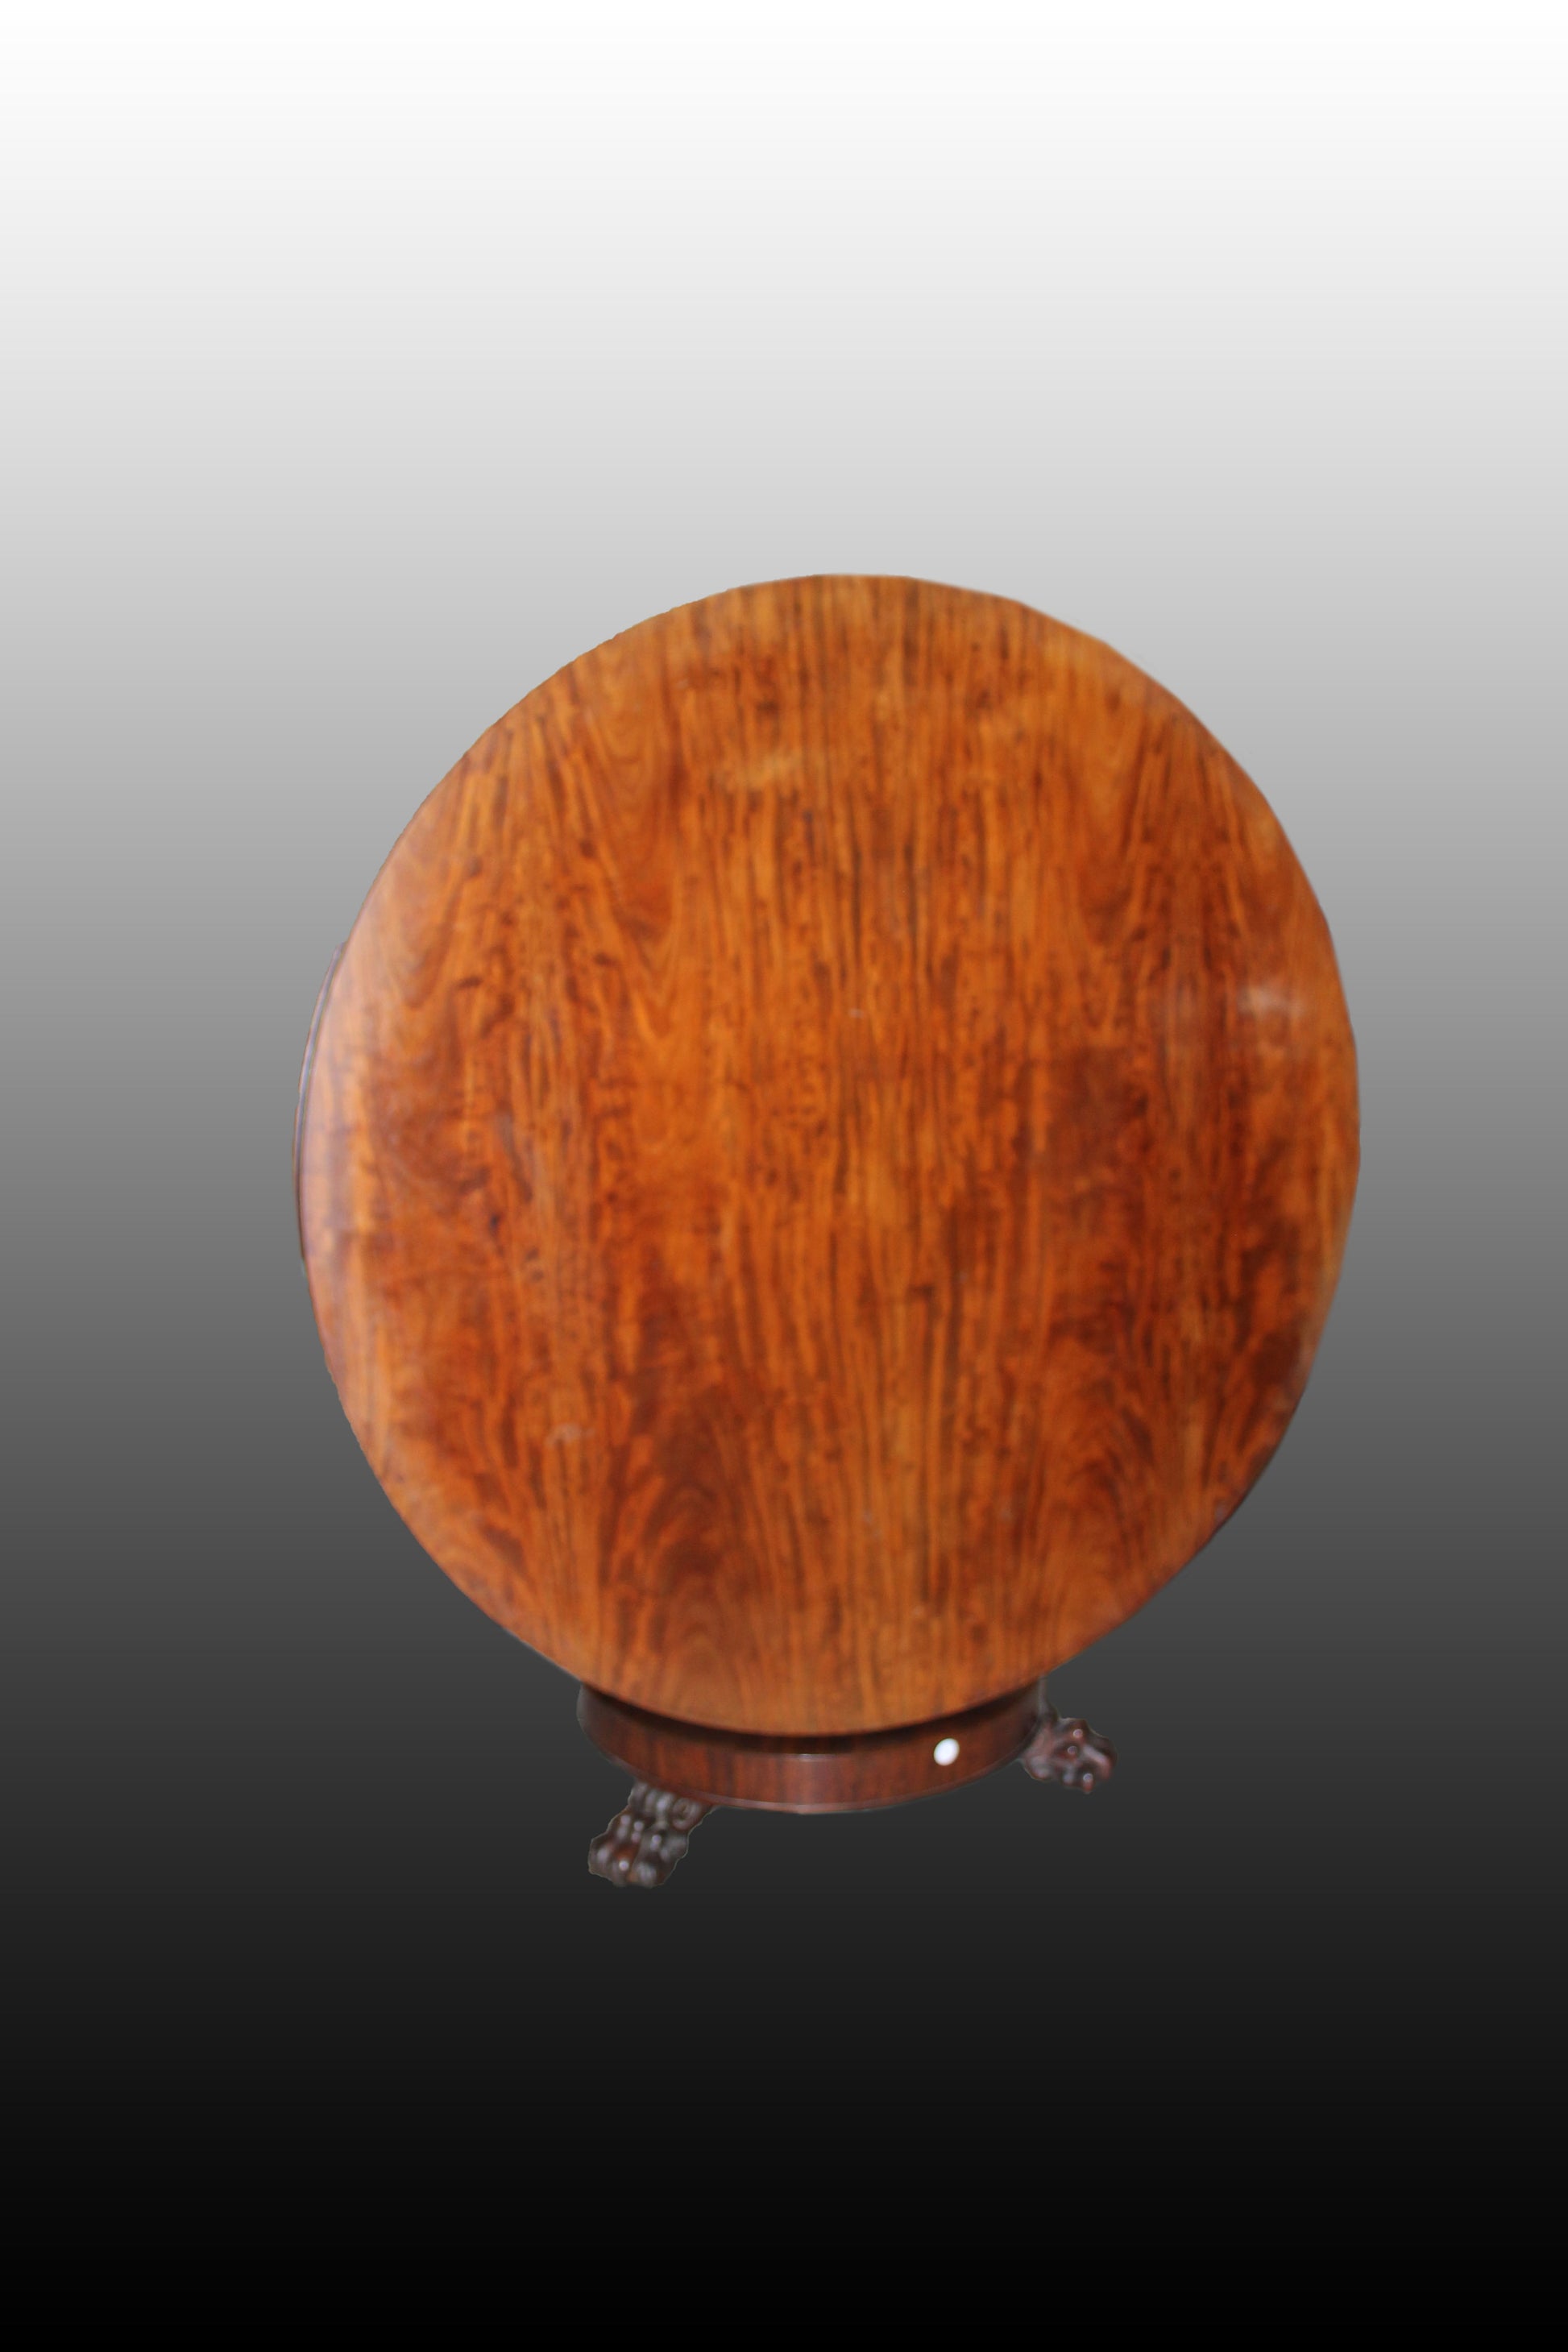 Tavolo Circolare a vela stile Carlo X del 1800 in legno di mogano